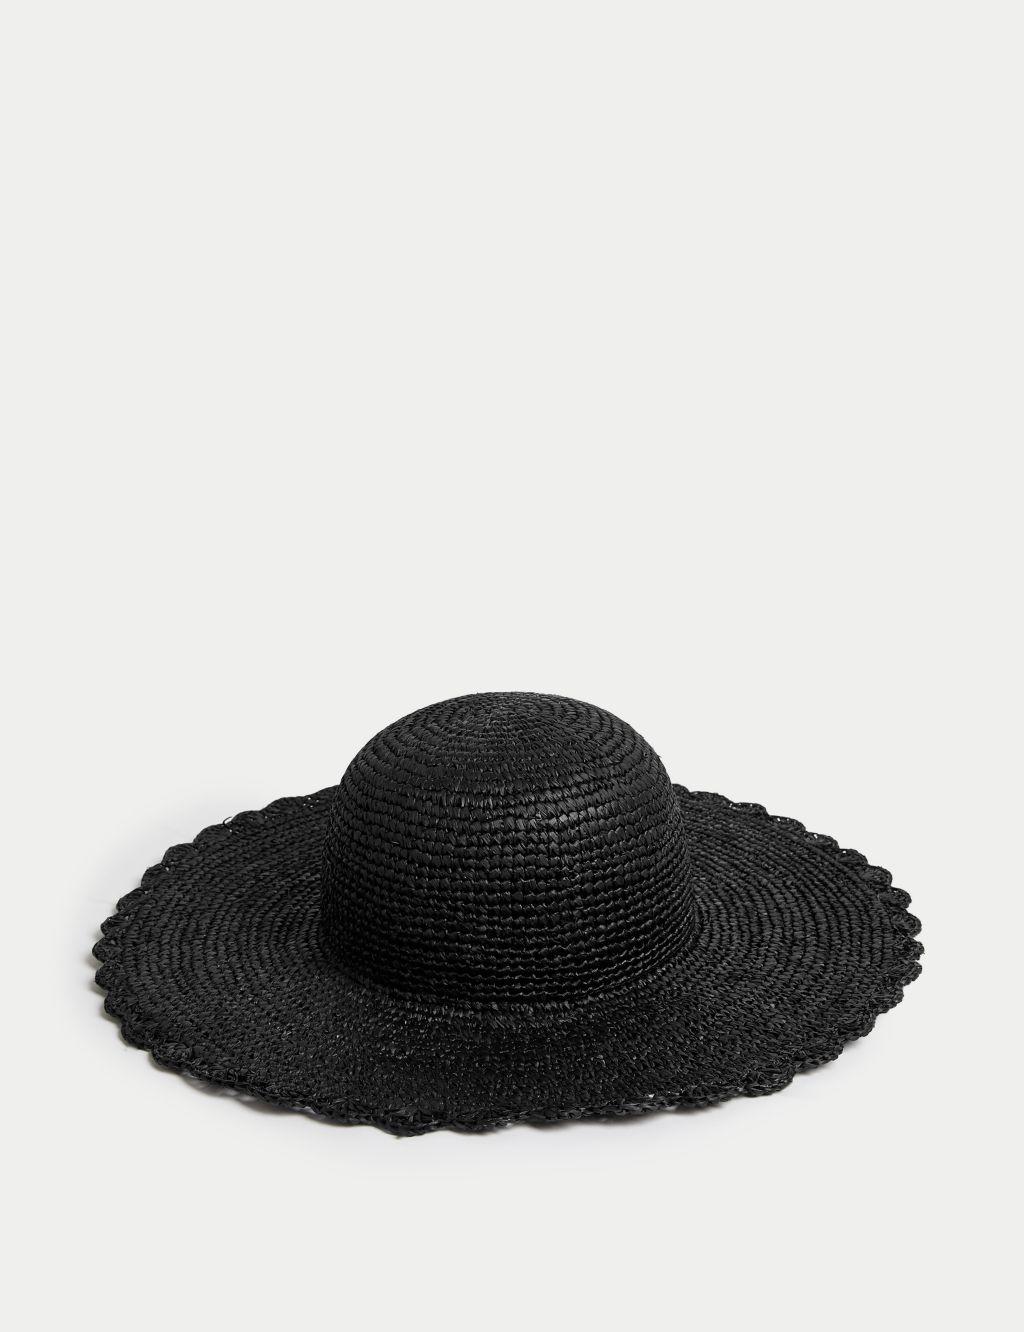 Straw Wide Brim Hat